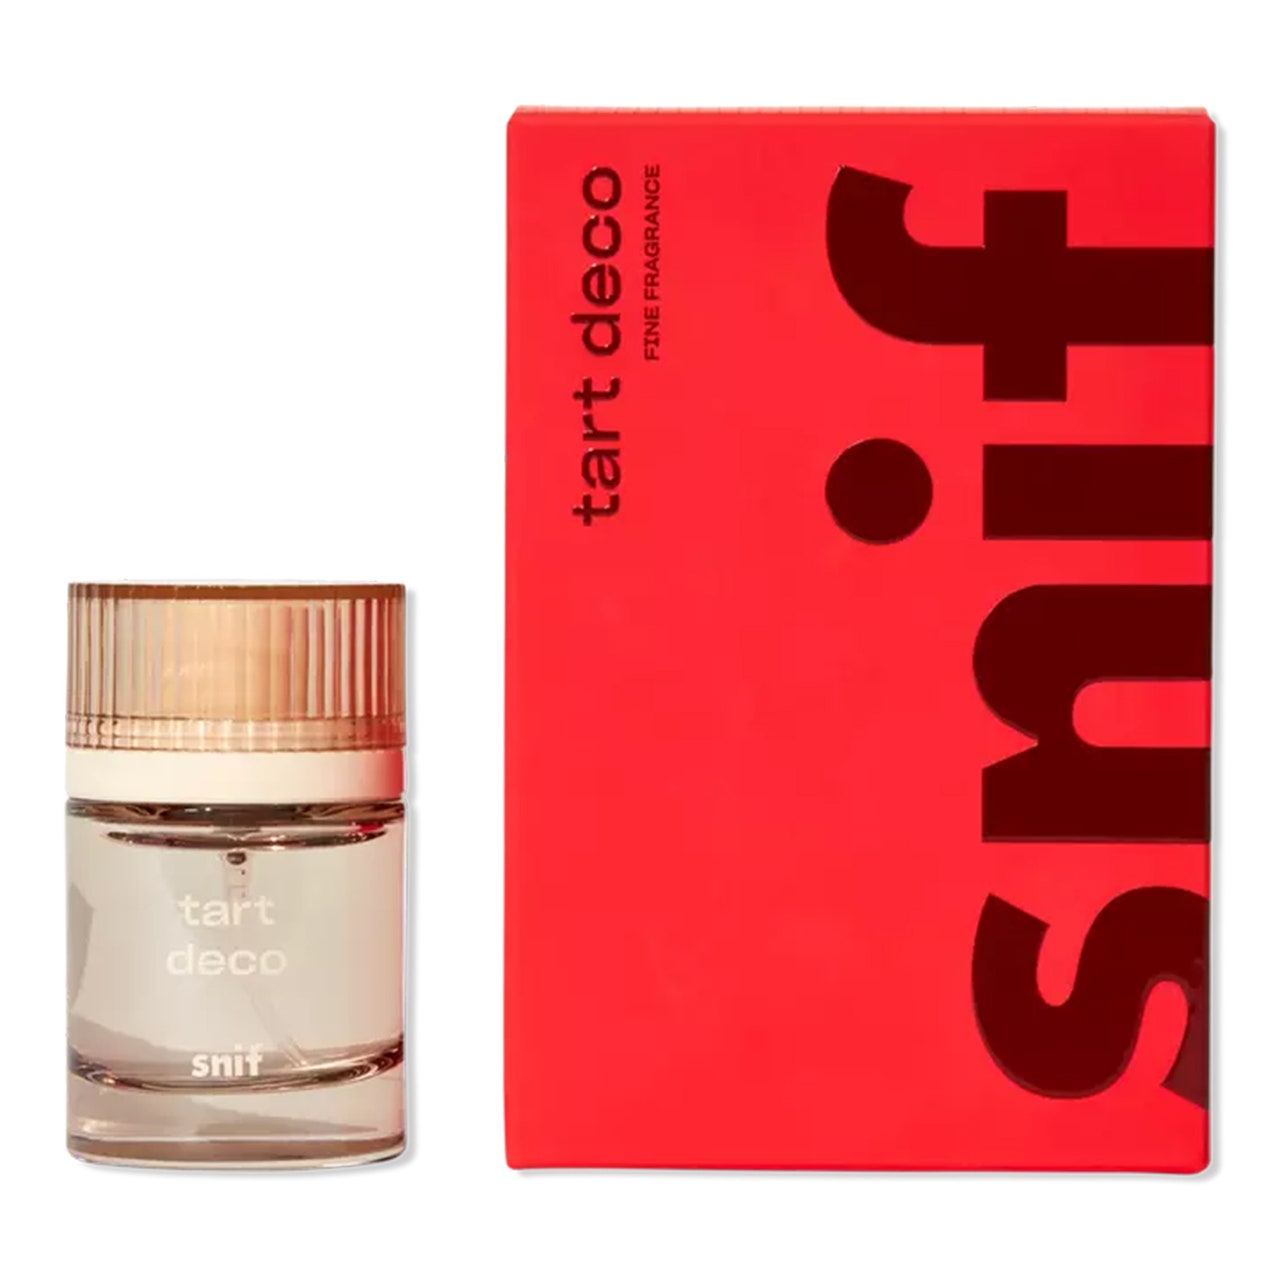 Snif Tart Deco Eau de Toilette hellbraune, transparente Parfümflasche und rote Box auf weißem Hintergrund